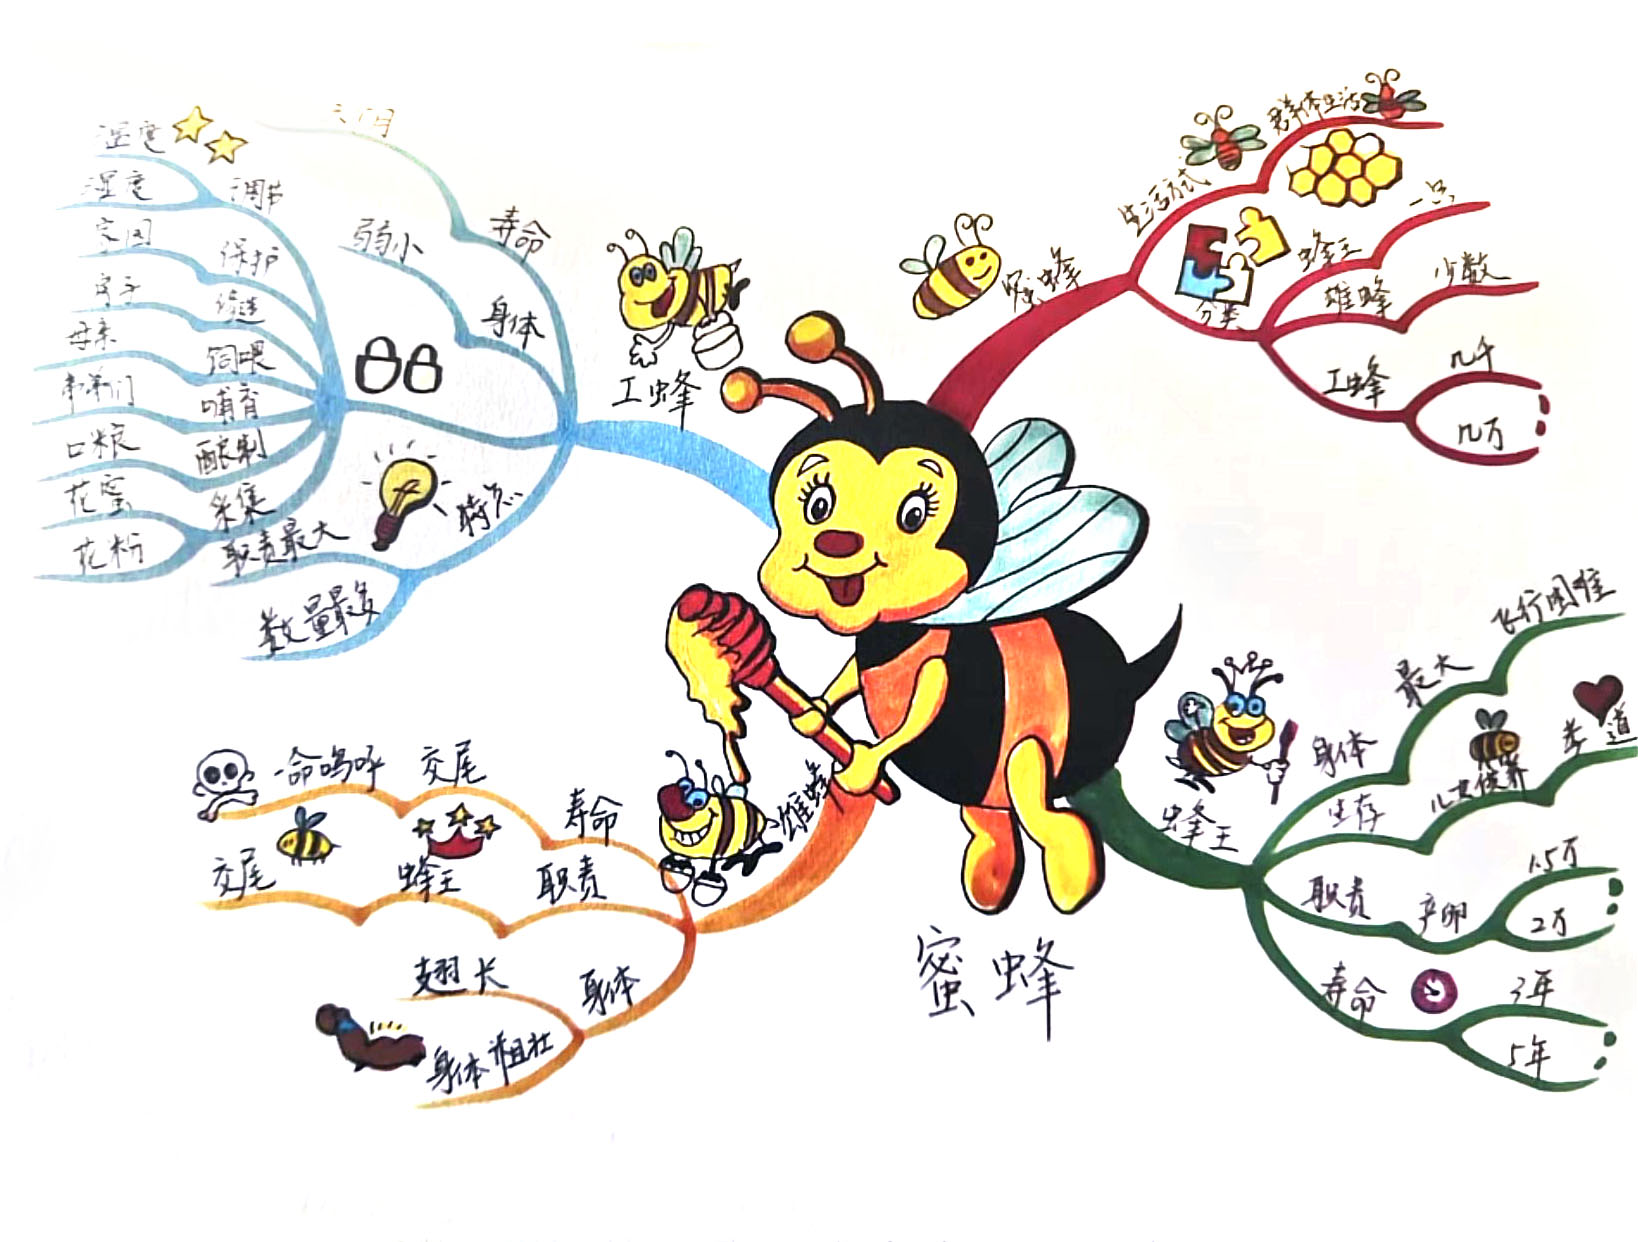 1张关于蜜蜂的导图模版（一等奖）